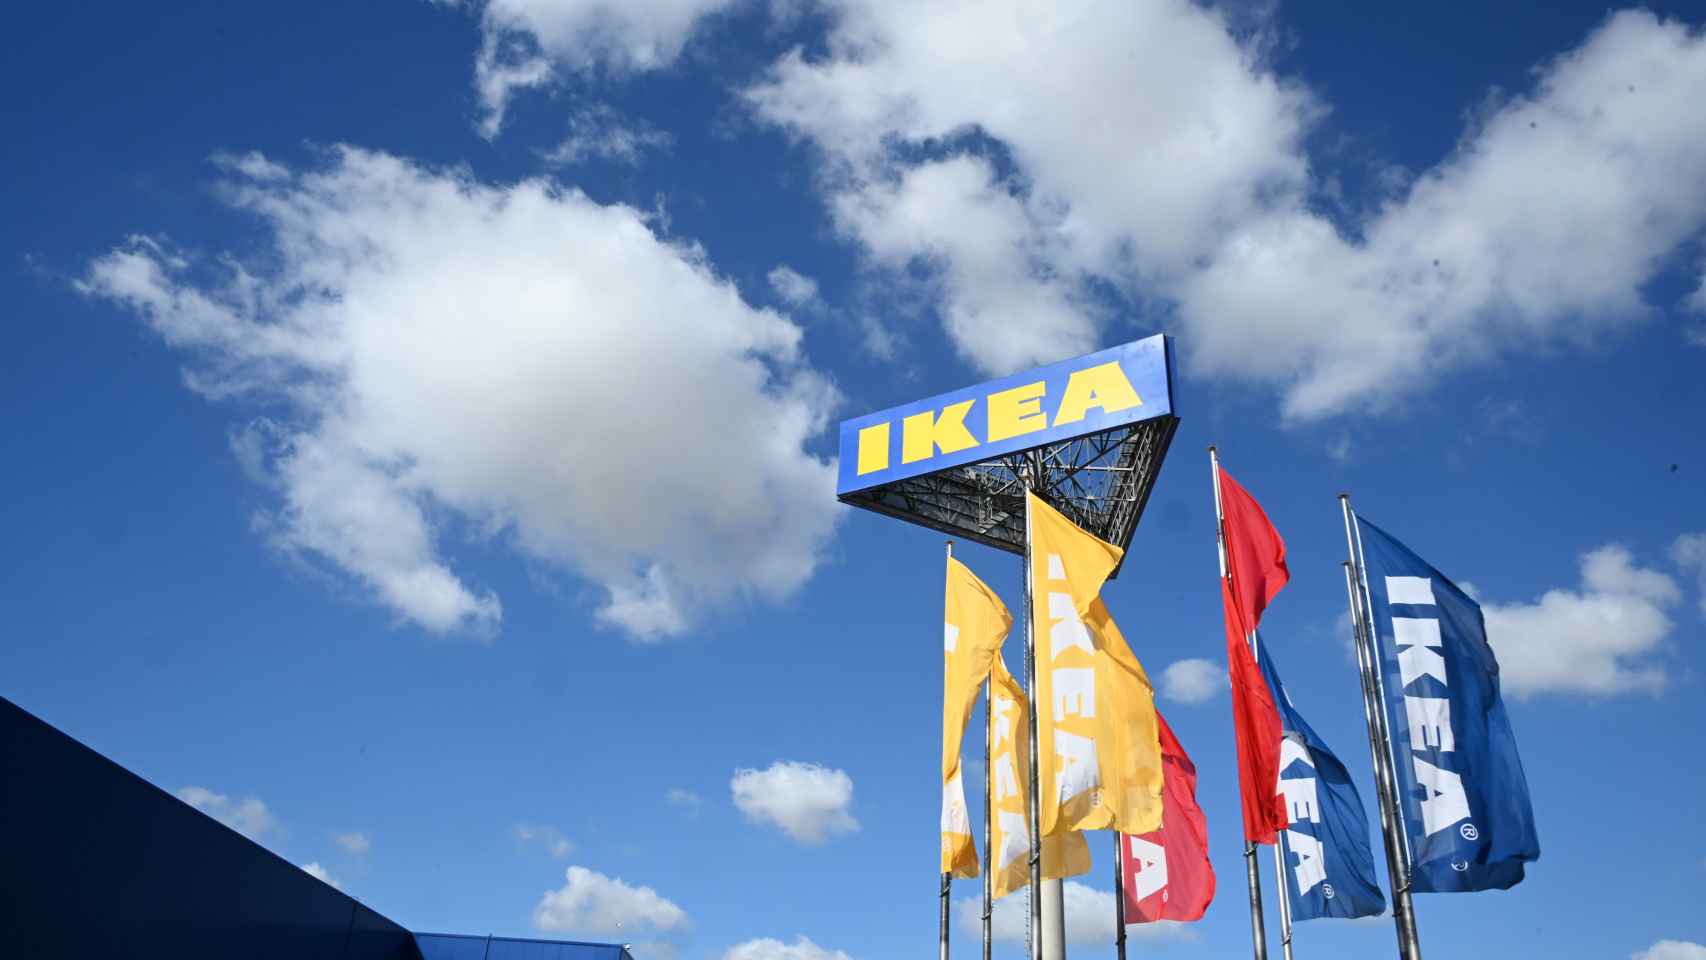 Banderas a la entrada de uno de los centros de Ikea.